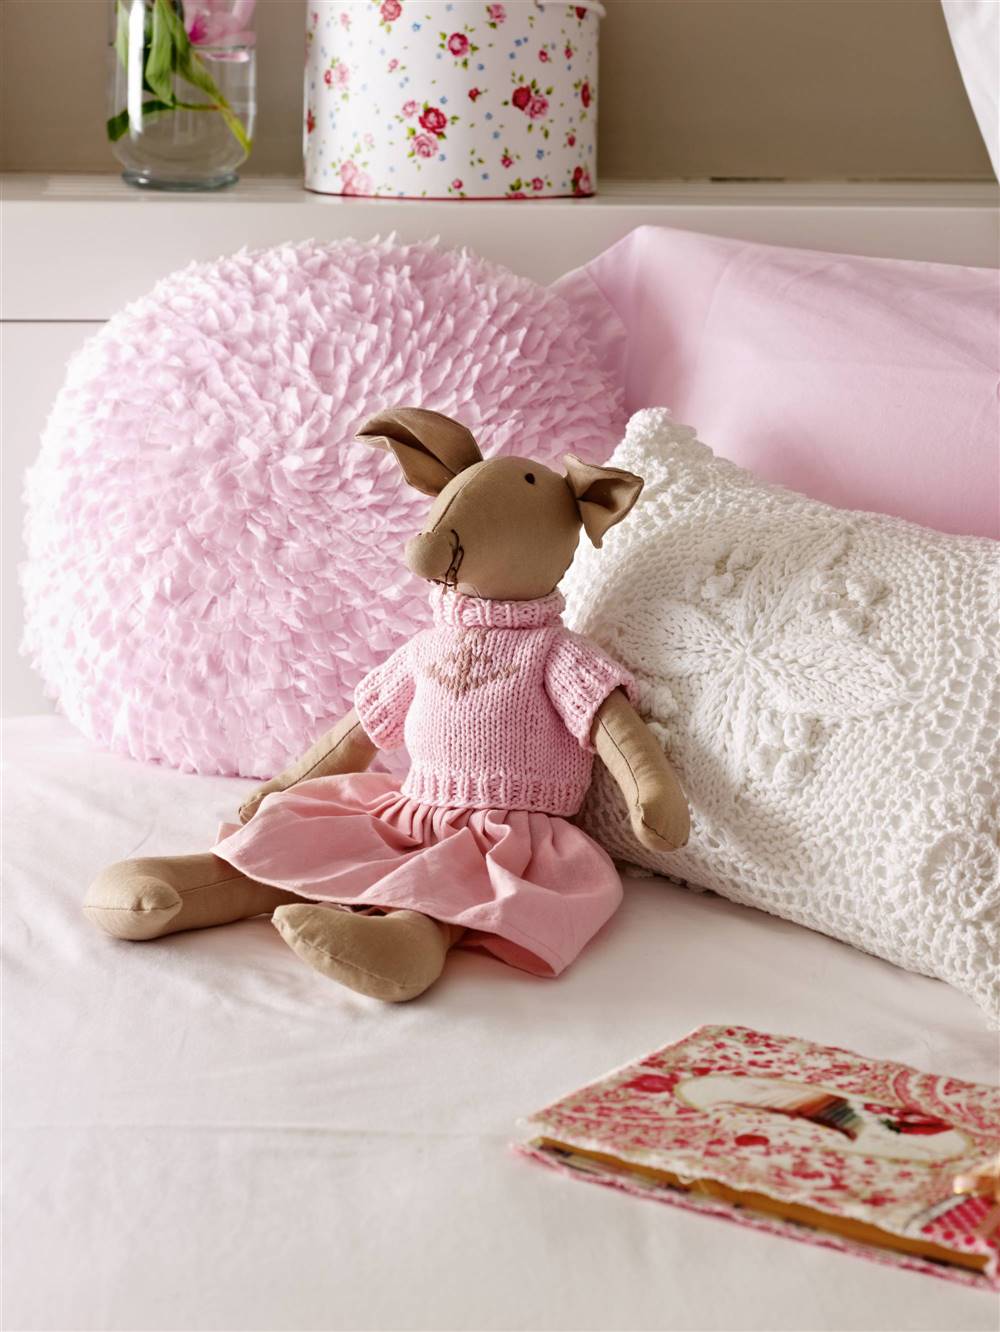 detalle de cama infantil con peluche y cojines 00318705